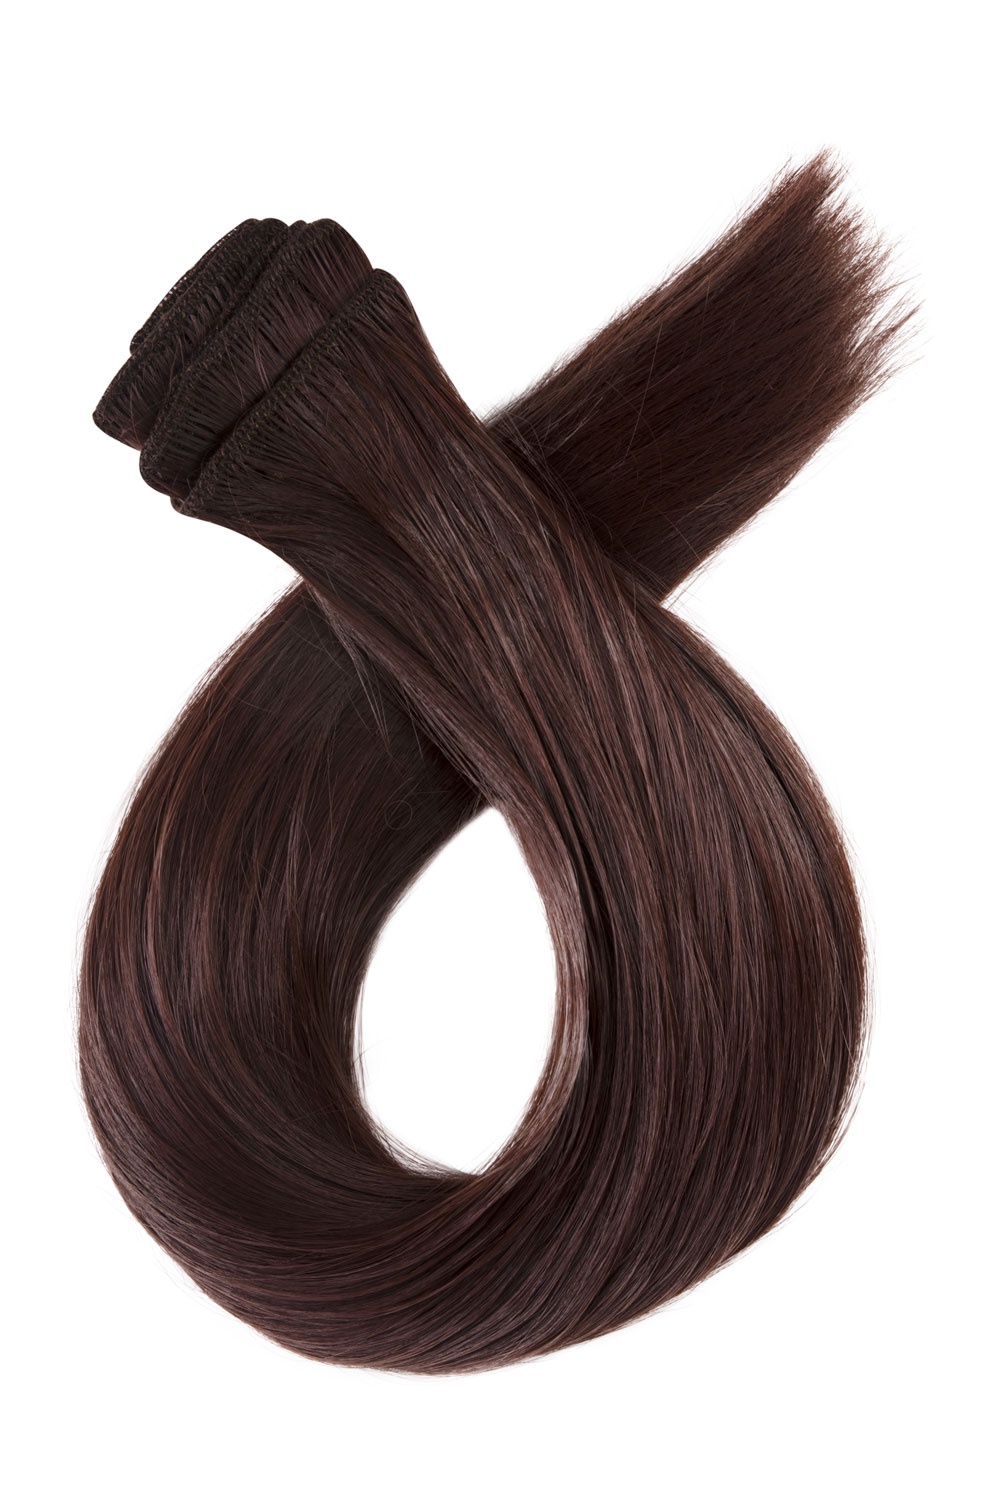 Tmavé červenohnedé clip in vlasy, 50cm, 150g, farba 33